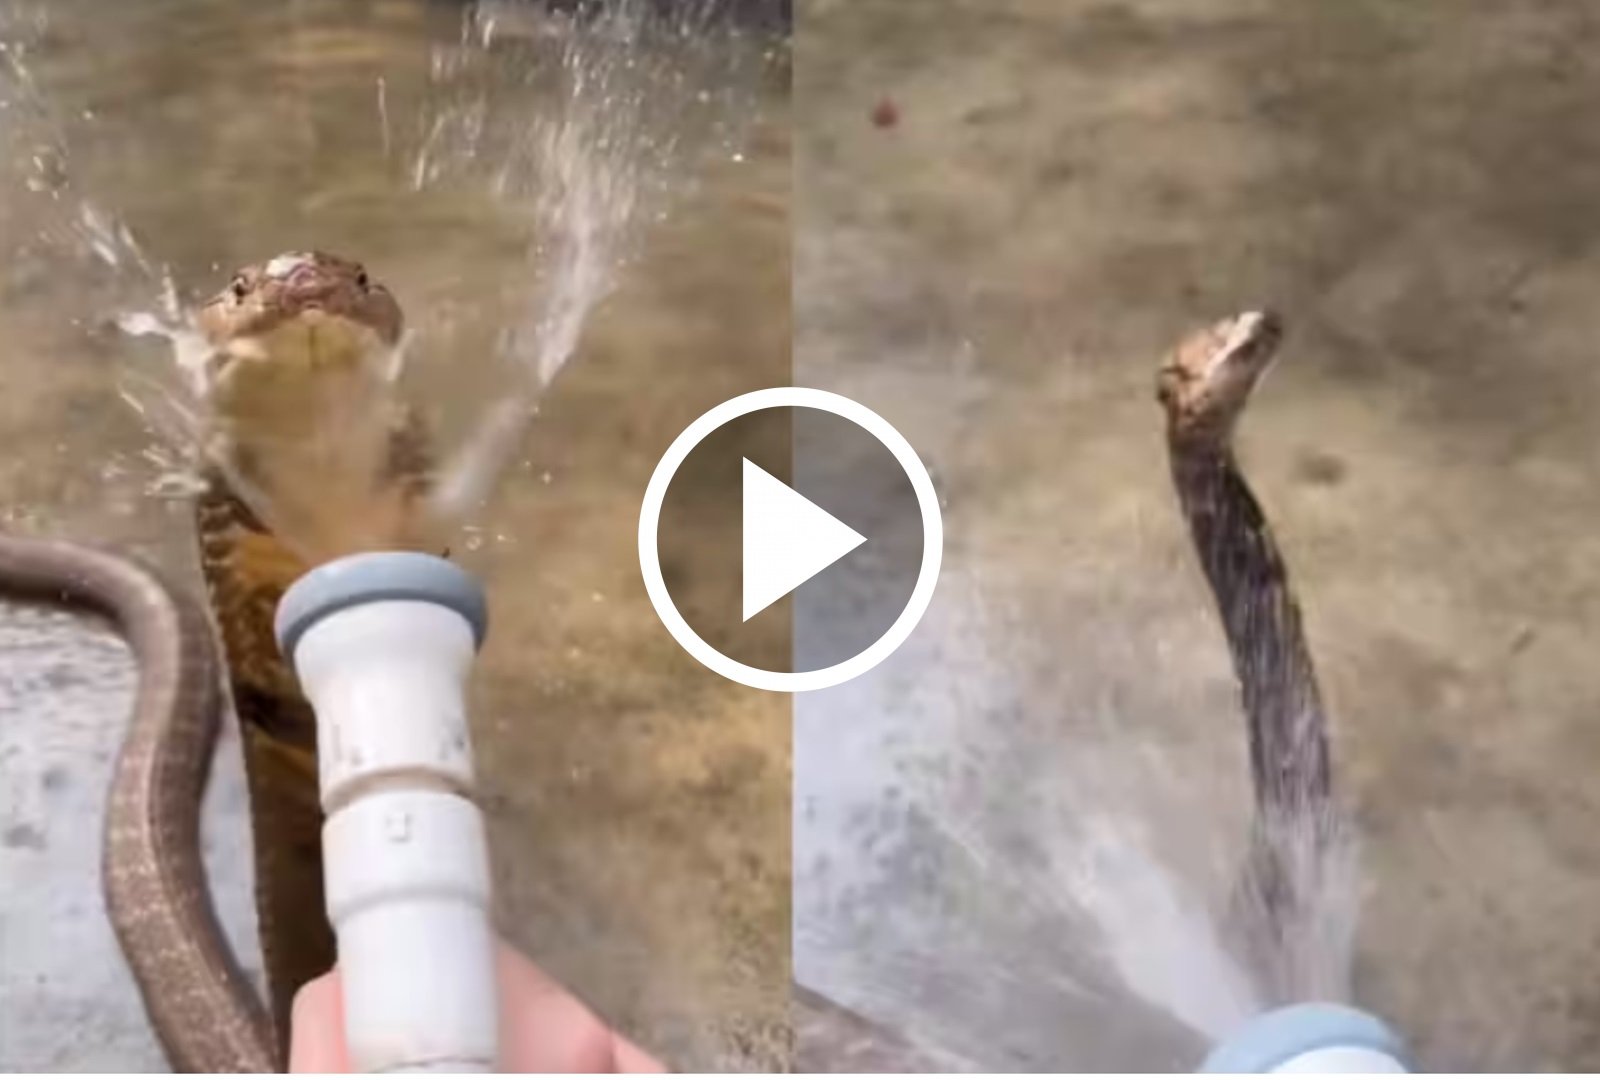 King Cobra Ka Video - पानी के शावर में मस्ती करते दिखा किंग कोबरा, वीडियो तेजी से हो रहा वायरल,